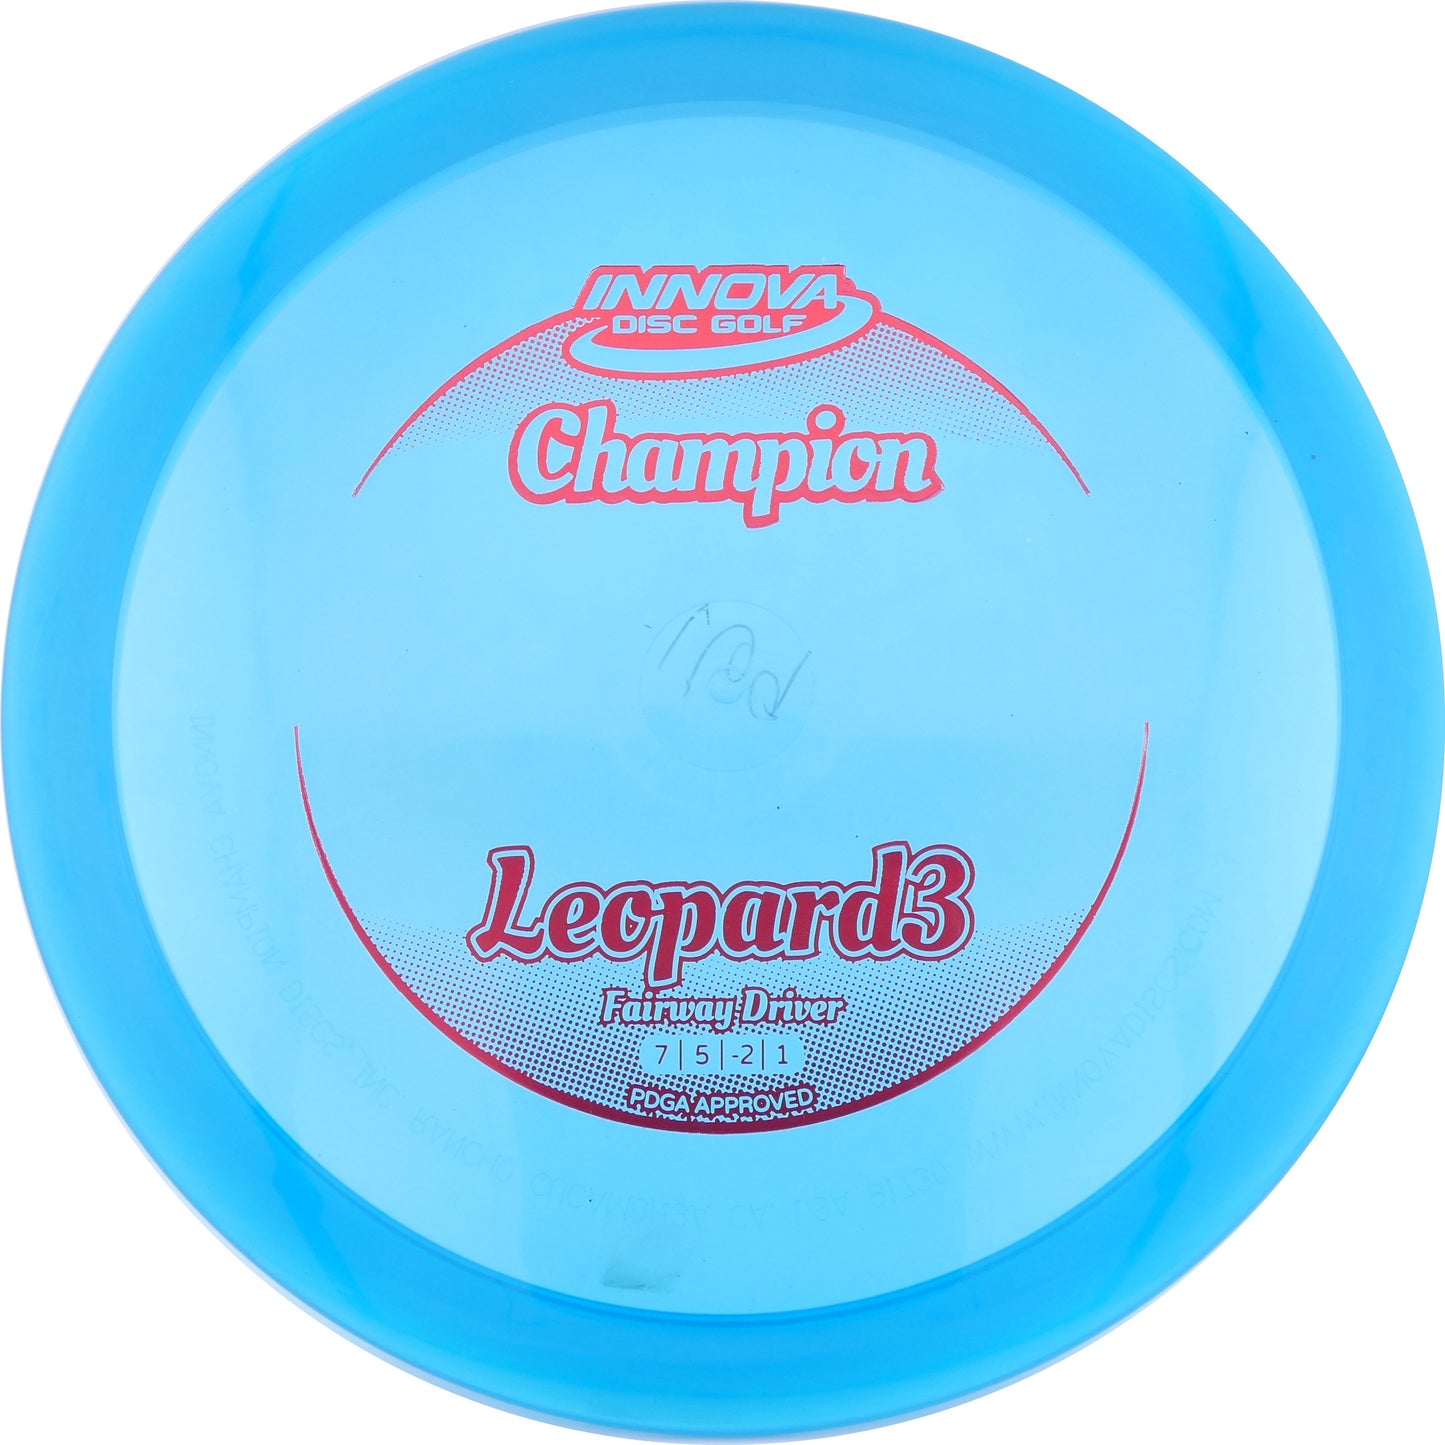 Champion Leopard3 Fairway Driver 166-169g